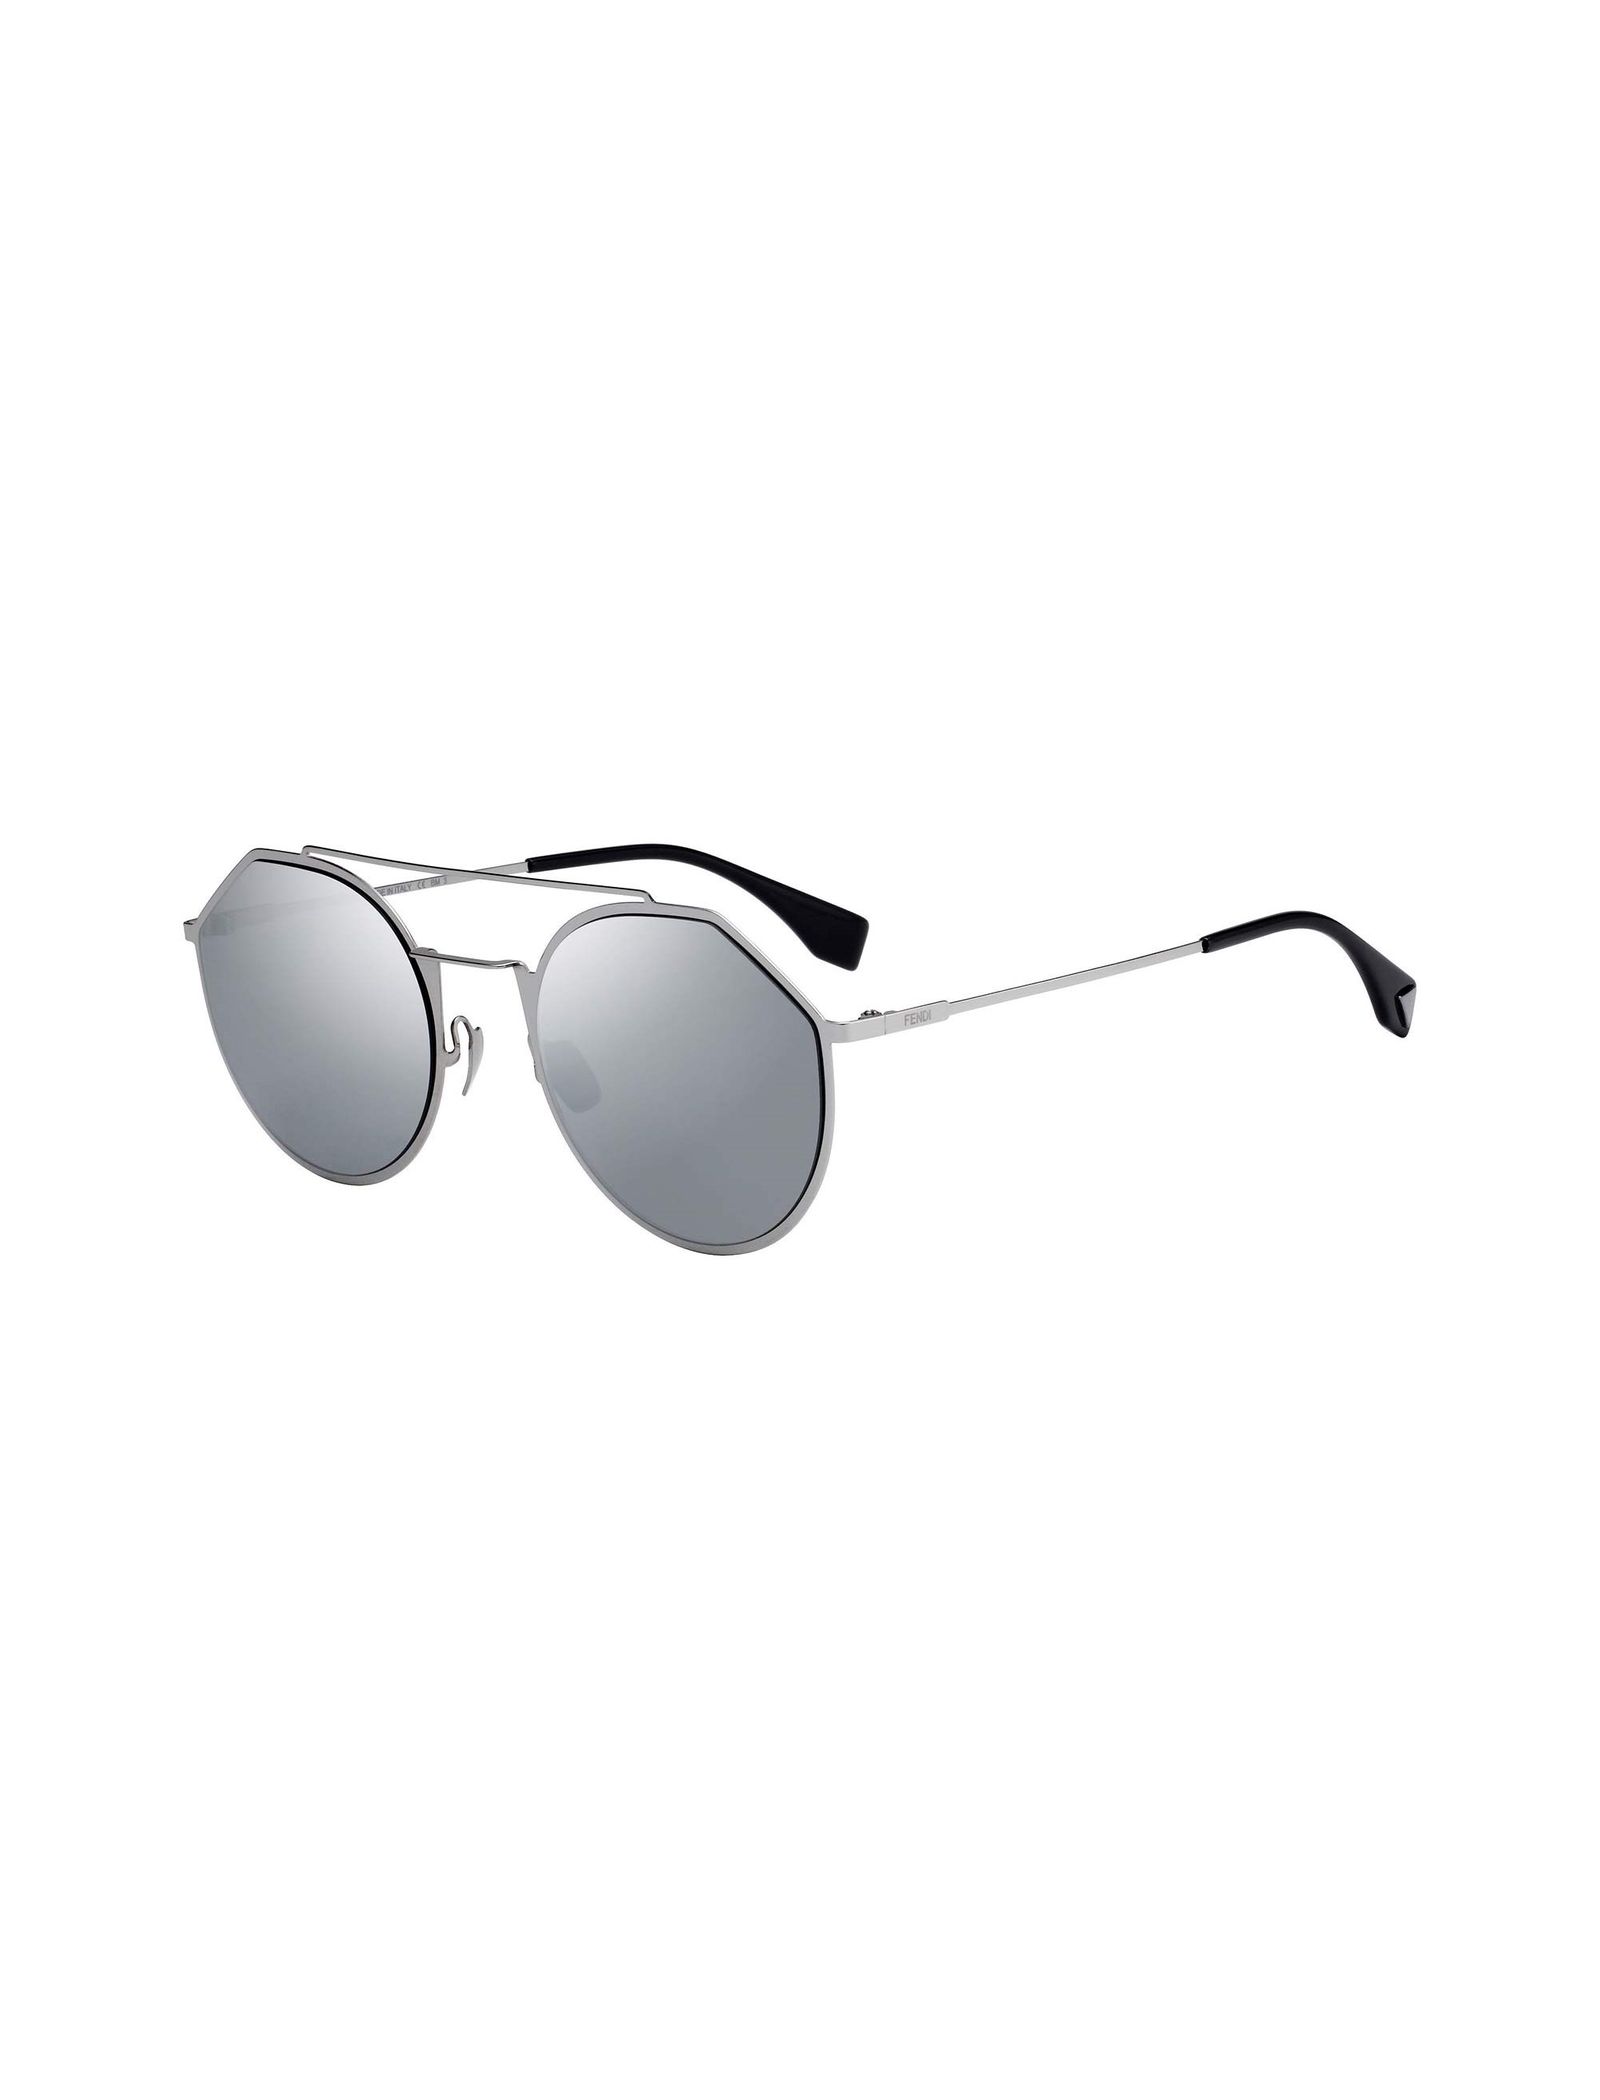 عینک آفتابی خلبانی مردانه - فندی - نقره اي - 1